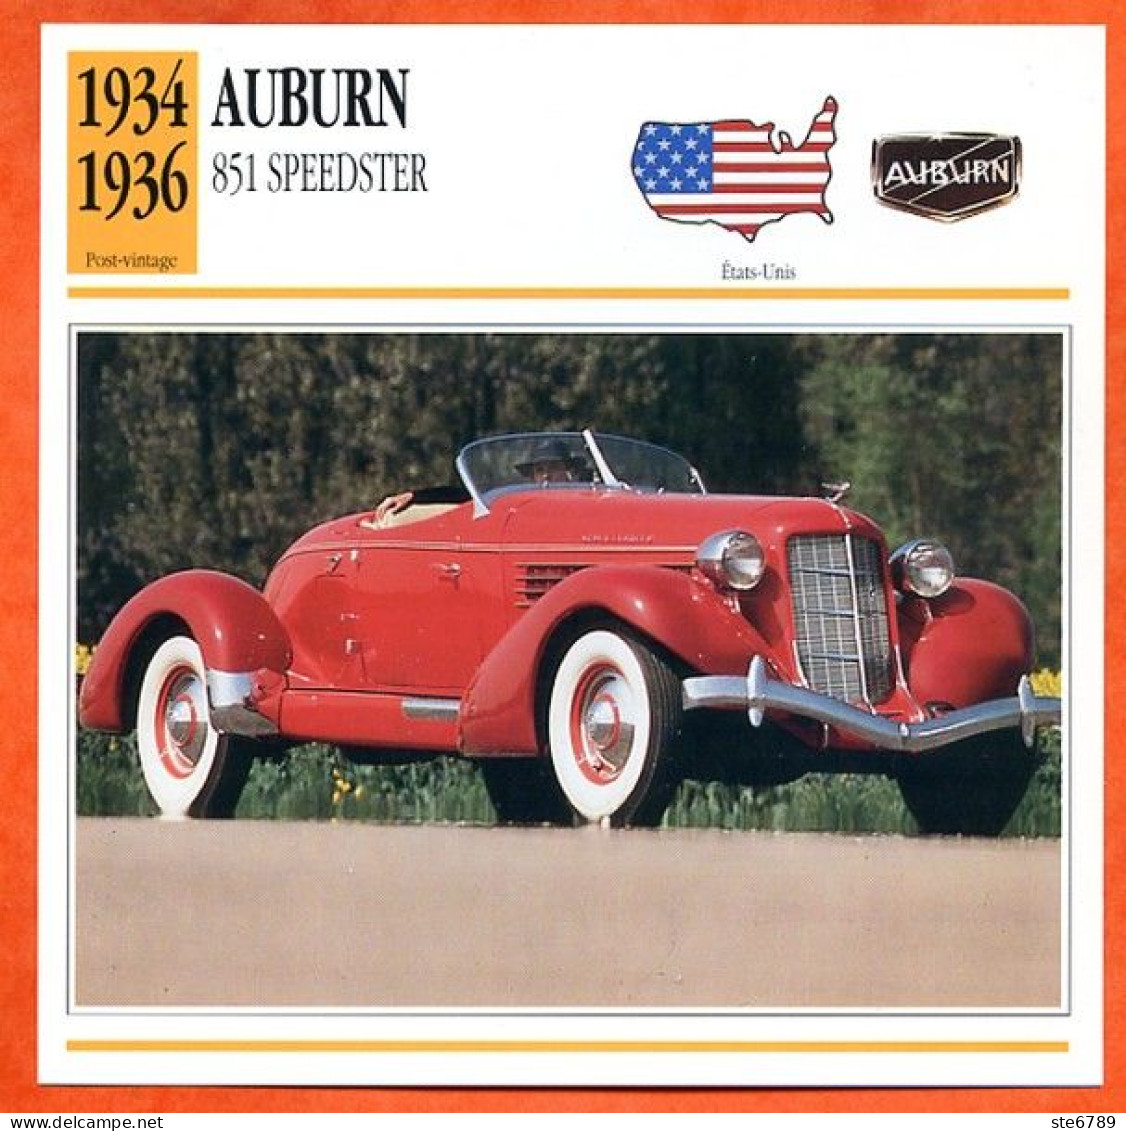 AUBURN 851 SPEEDSTER 1934 Voiture  USA  Auto Fiche Technique Automobile - Cars